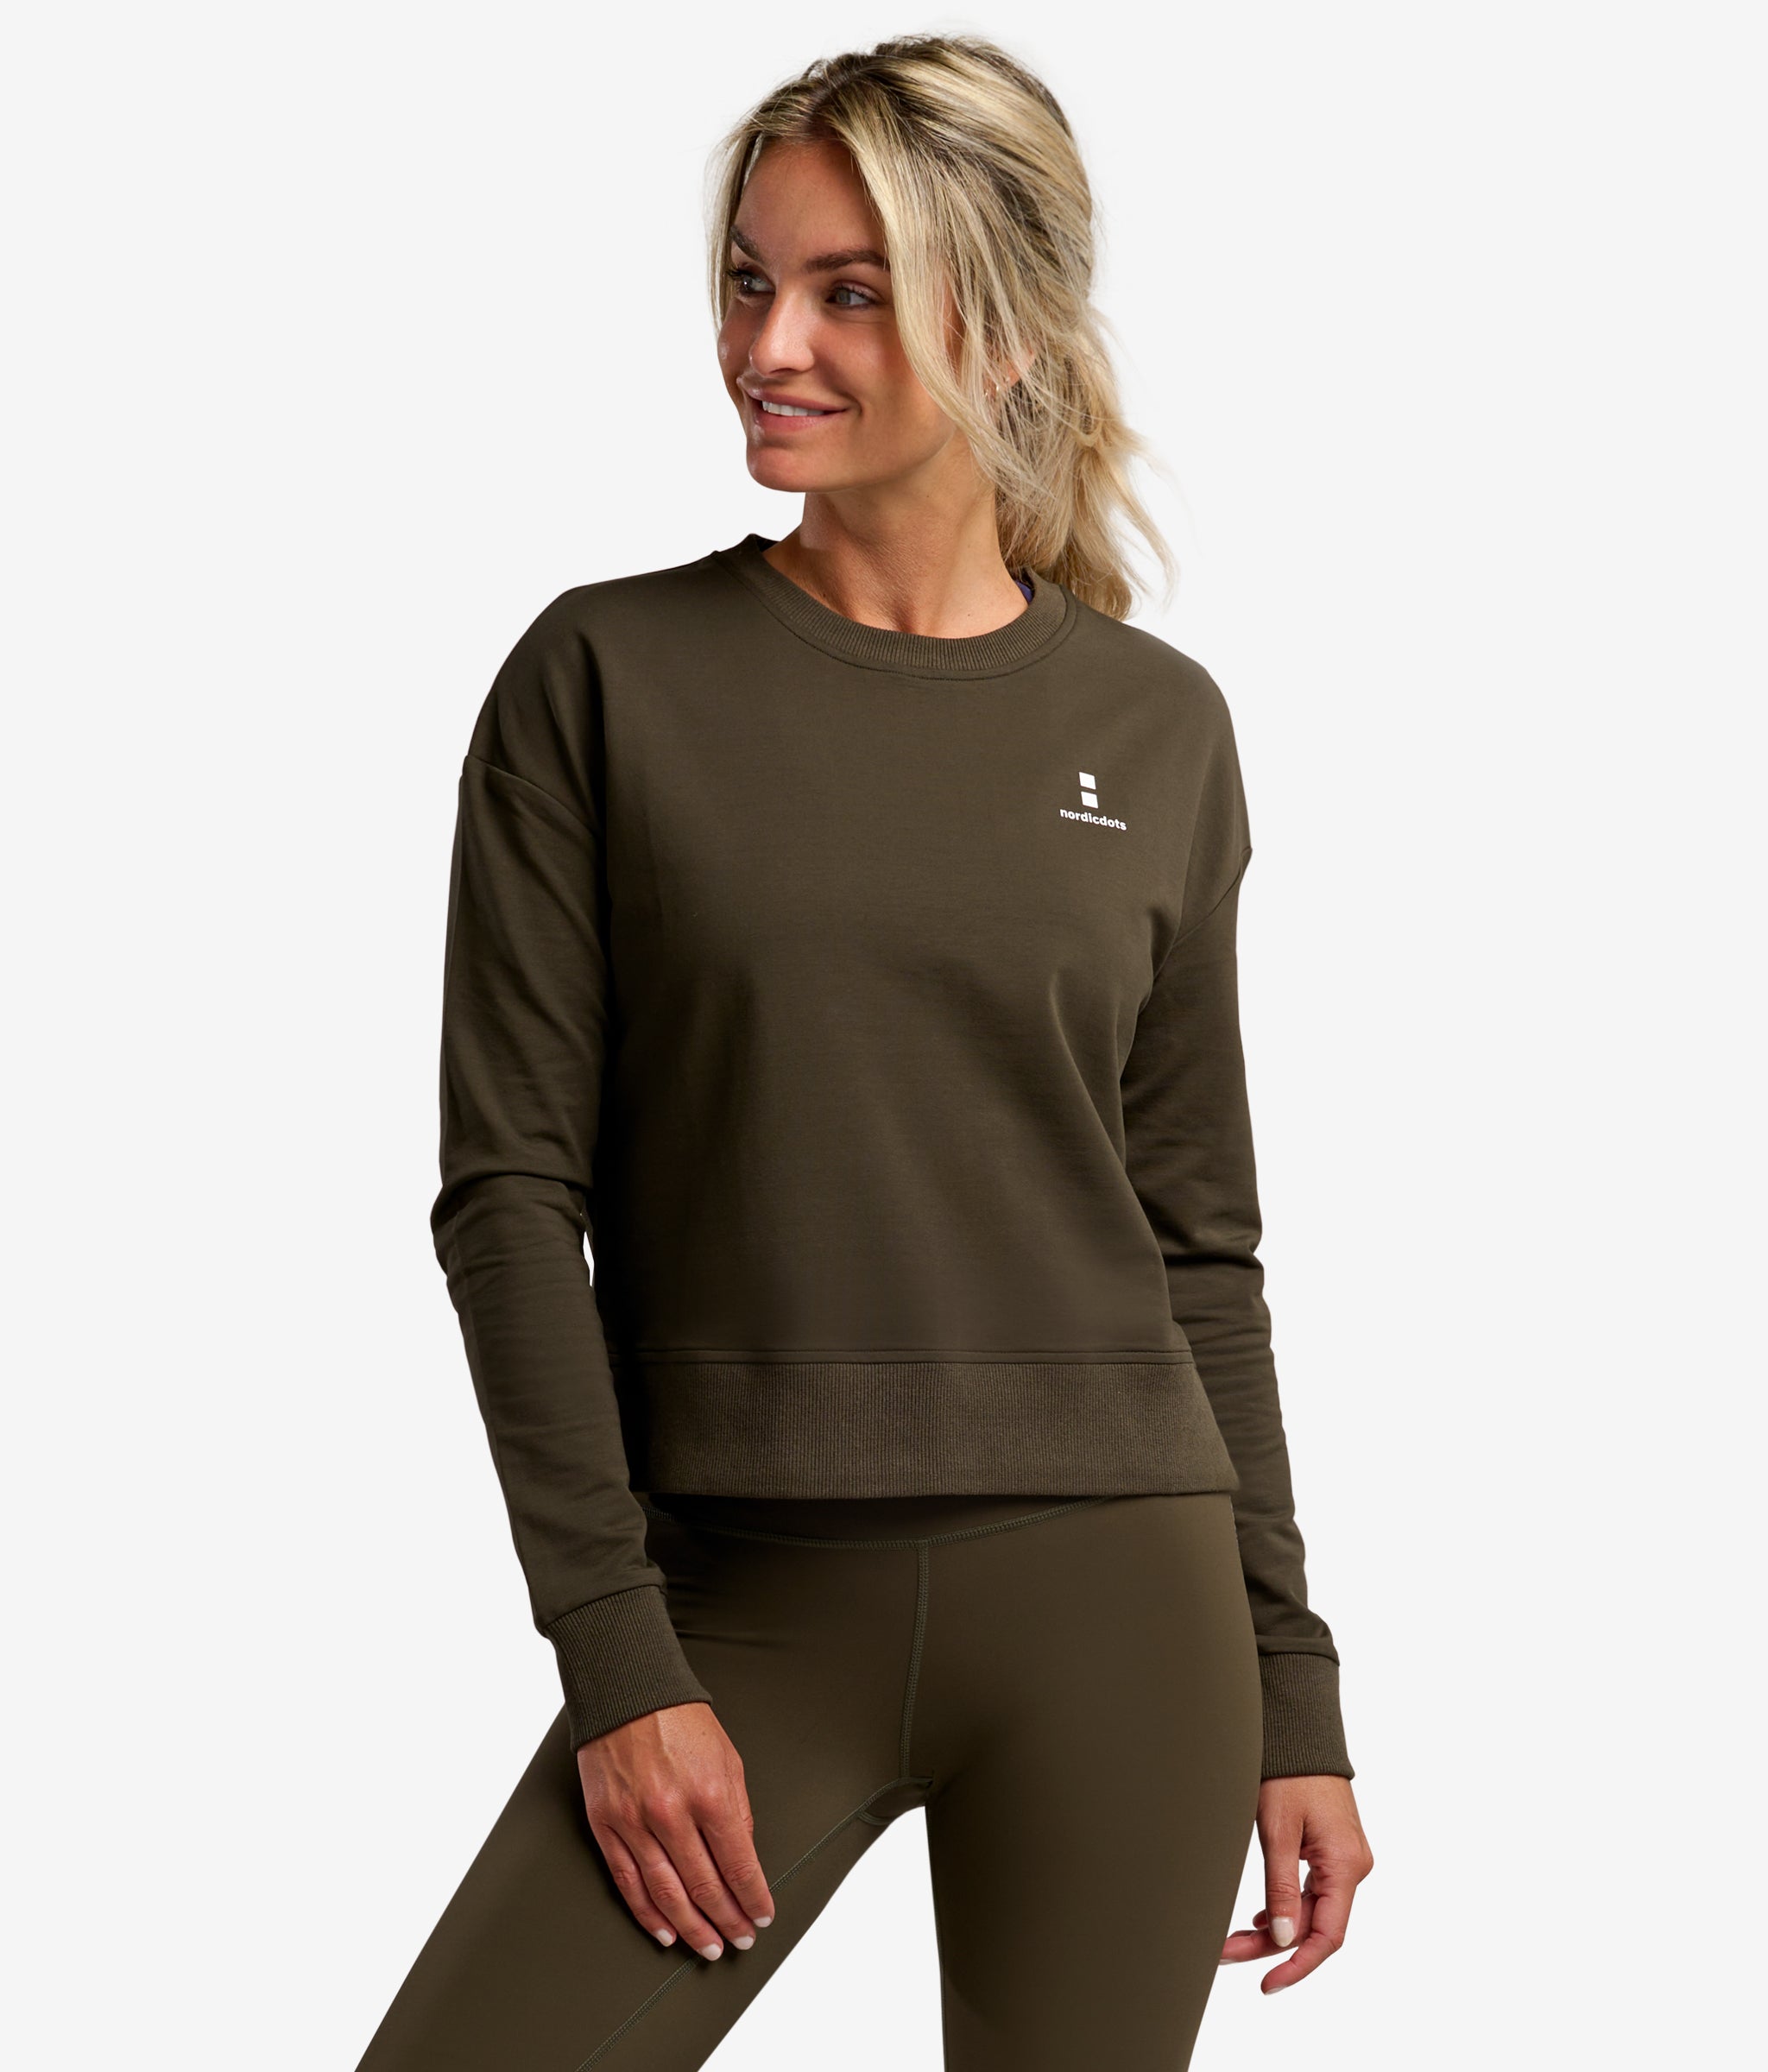 nordicdots women tennis padel sweatshirt 